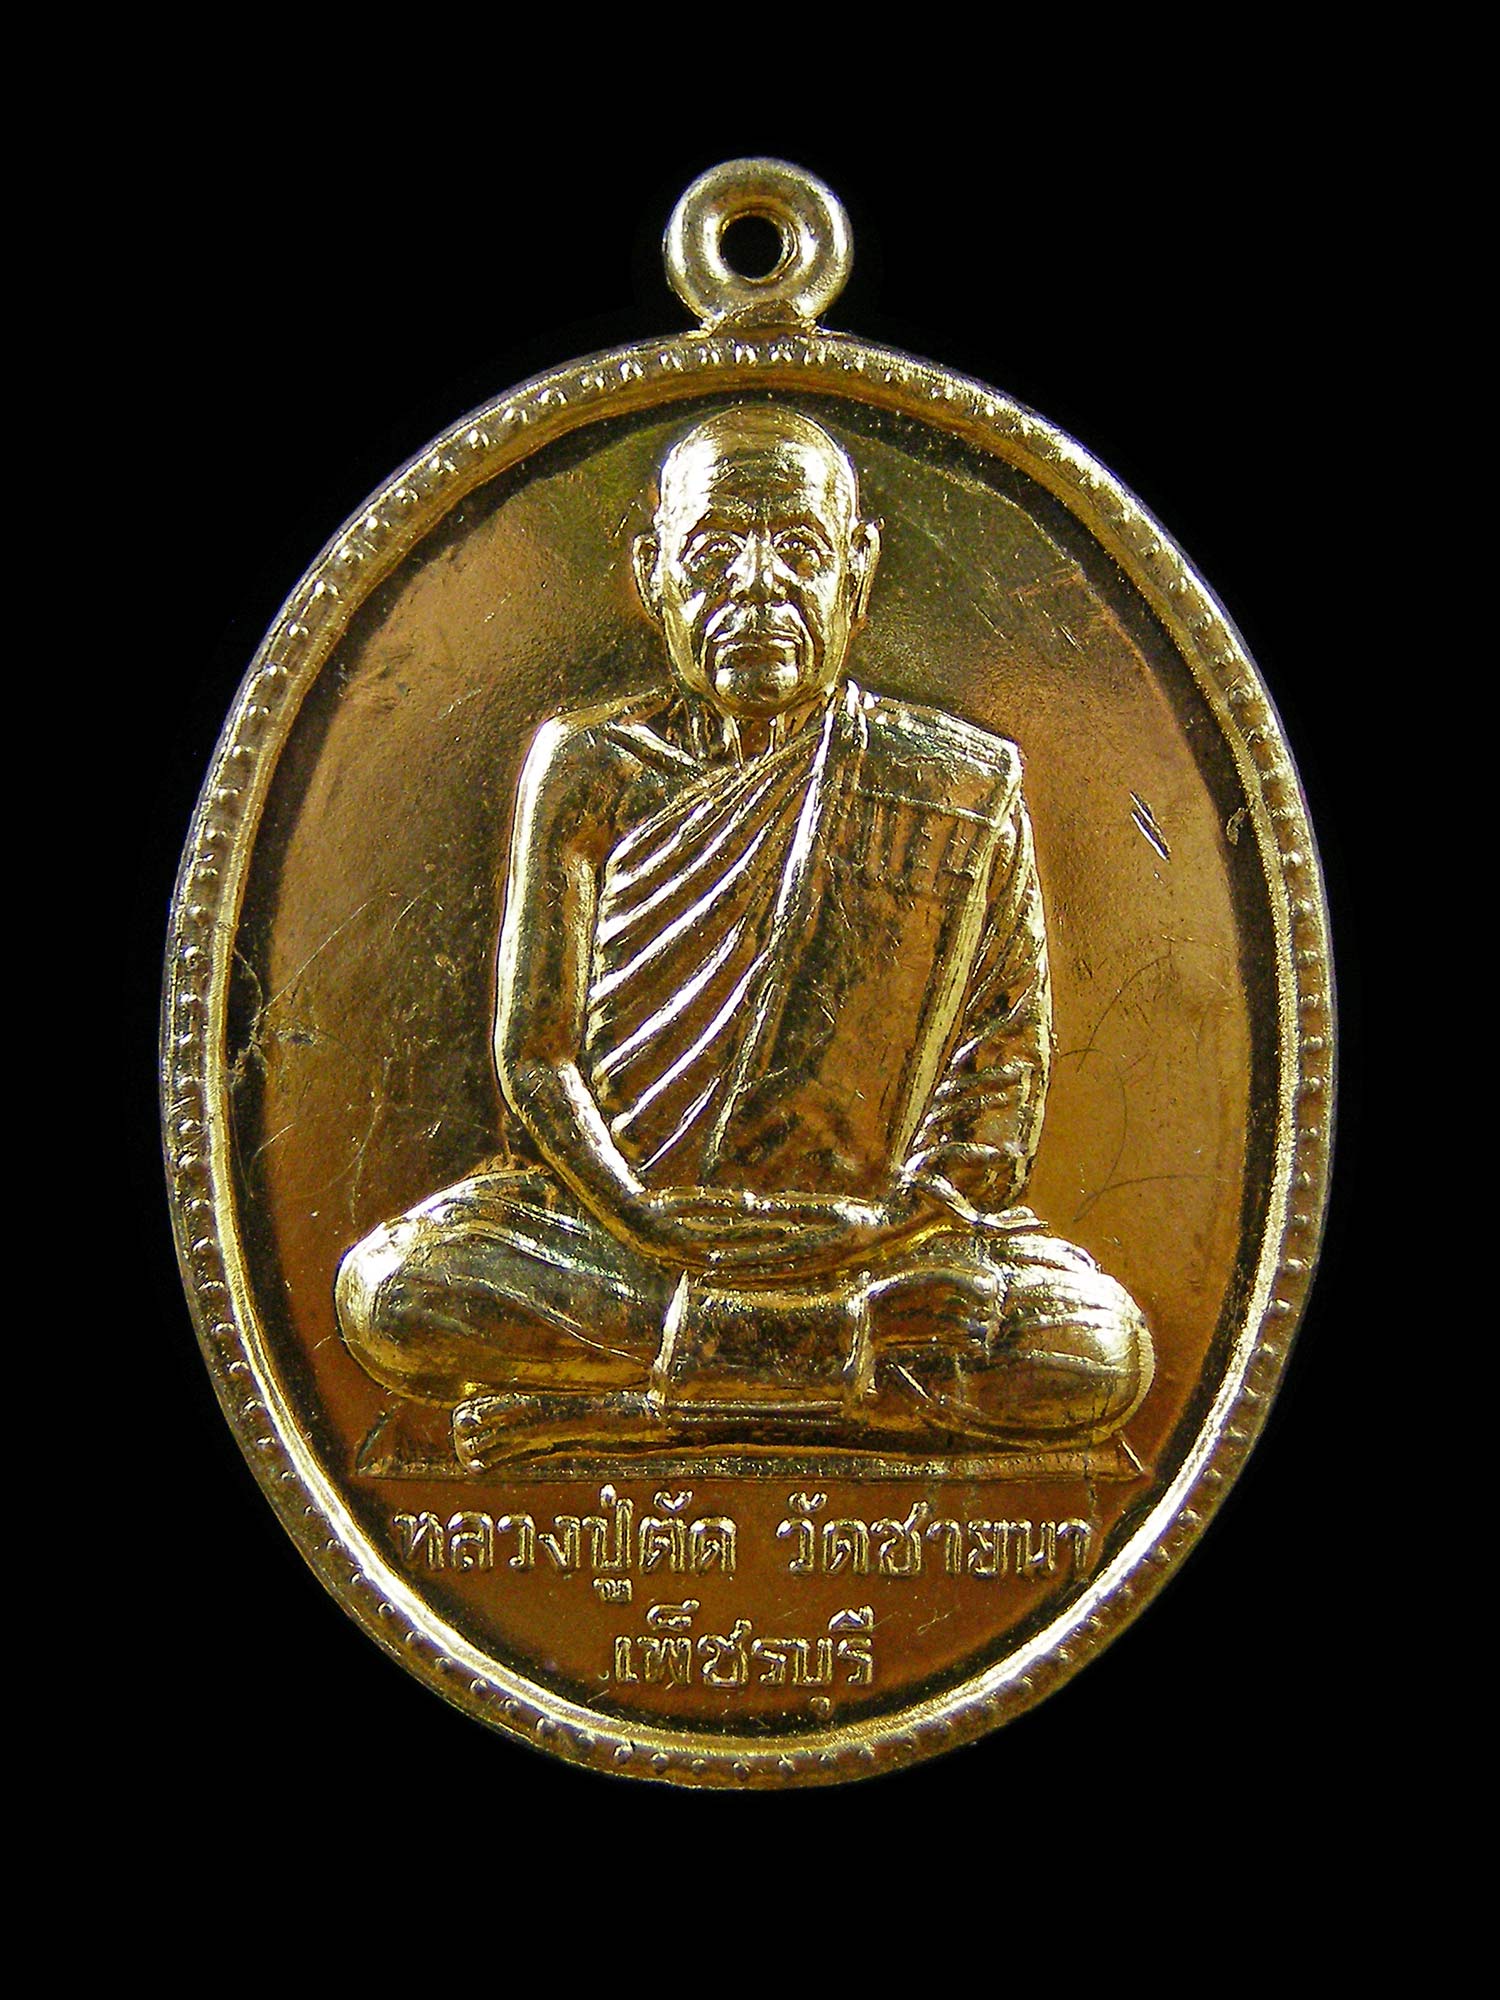 เหรียญหลังยันต์ หลวงพ่อตัด วัดชายนา จ.เพชรบุรี ปี2549 ฉลองอายุ 75 ปี 